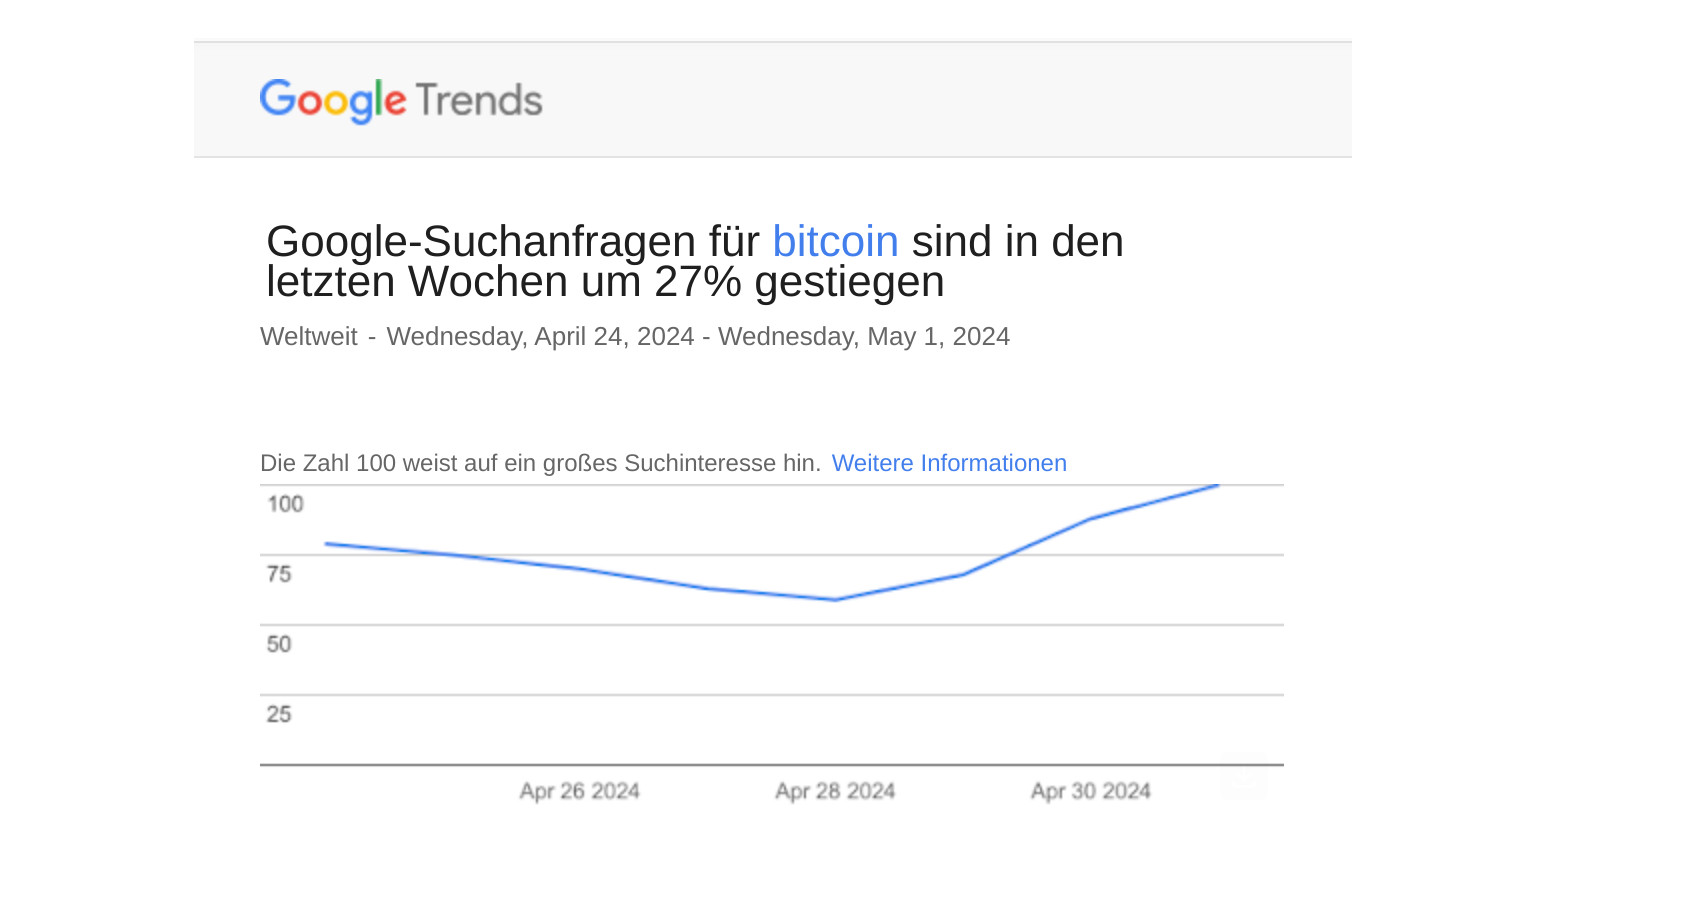 Google-Suchanfragen für Bitcoin sind in den letzten Wochen um 27% gestiegen